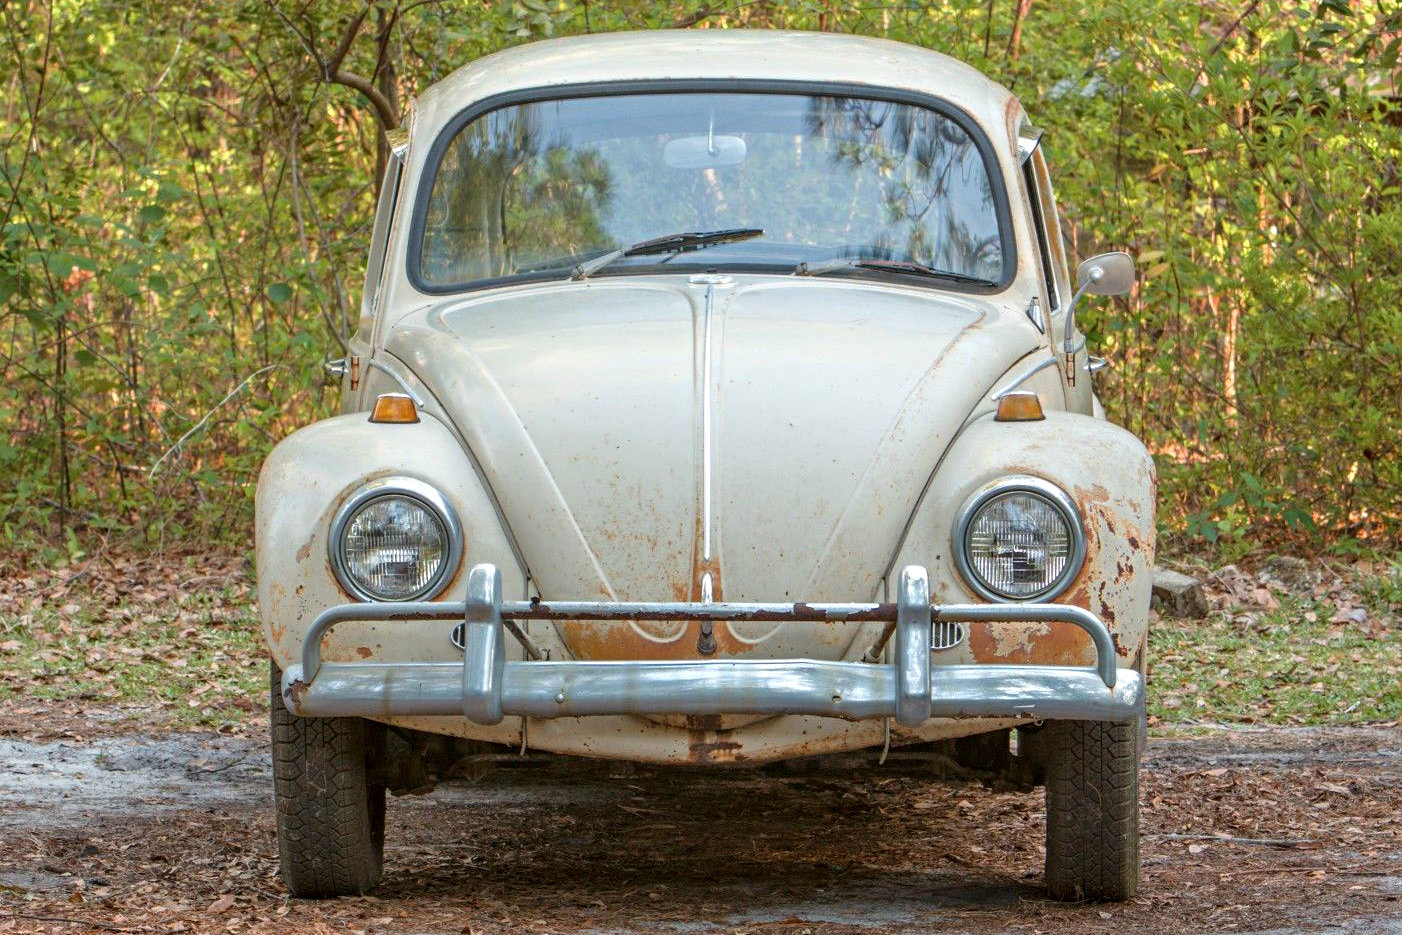 Forgotten Type 1: 1967 Volkswagen Beetle